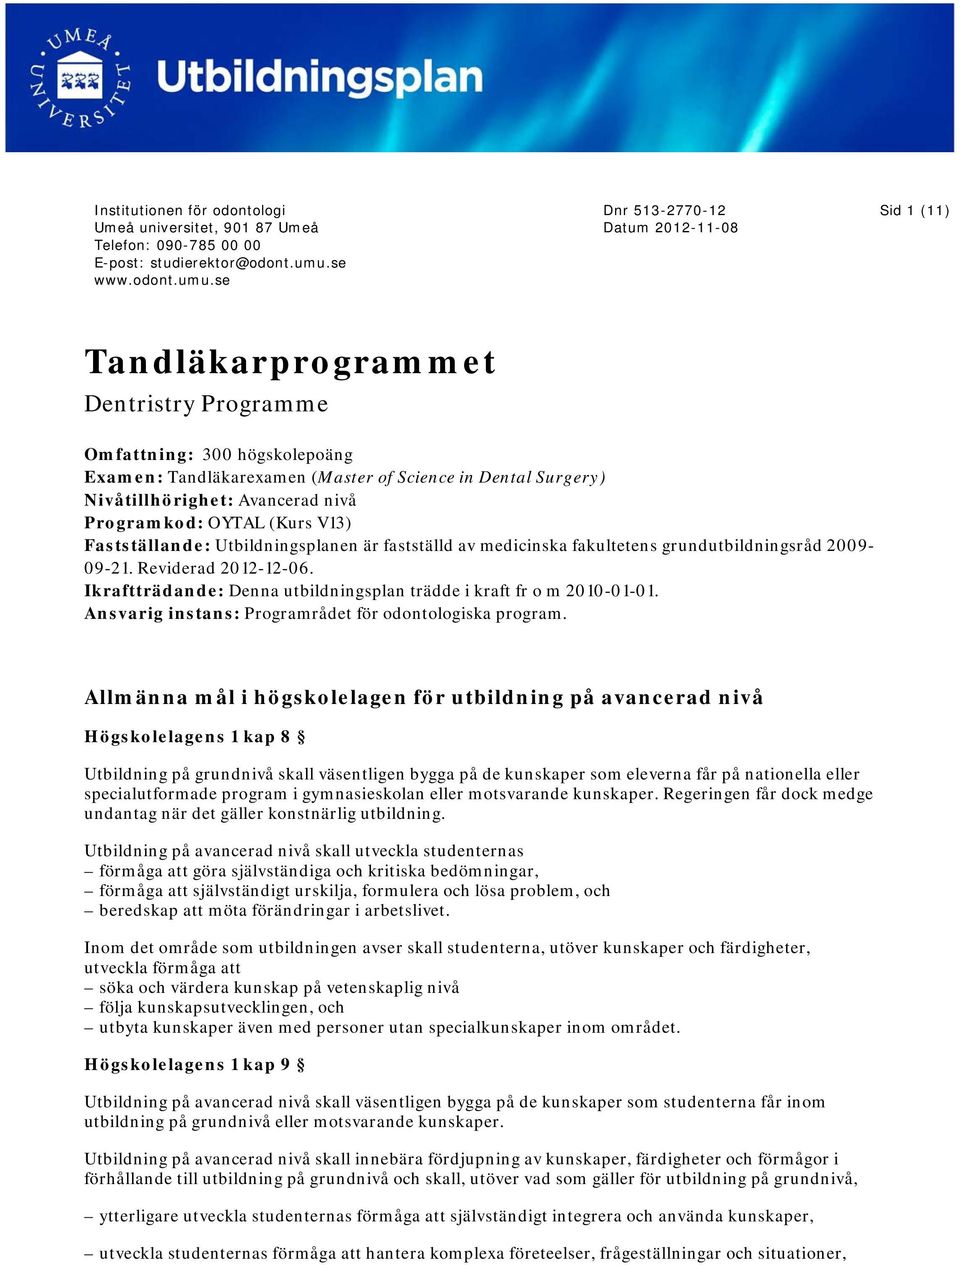 Ikraftträdande: Denna utbildningsplan trädde i kraft fr o m 2010-01-01. Ansvarig instans: Programrådet för odontologiska program.